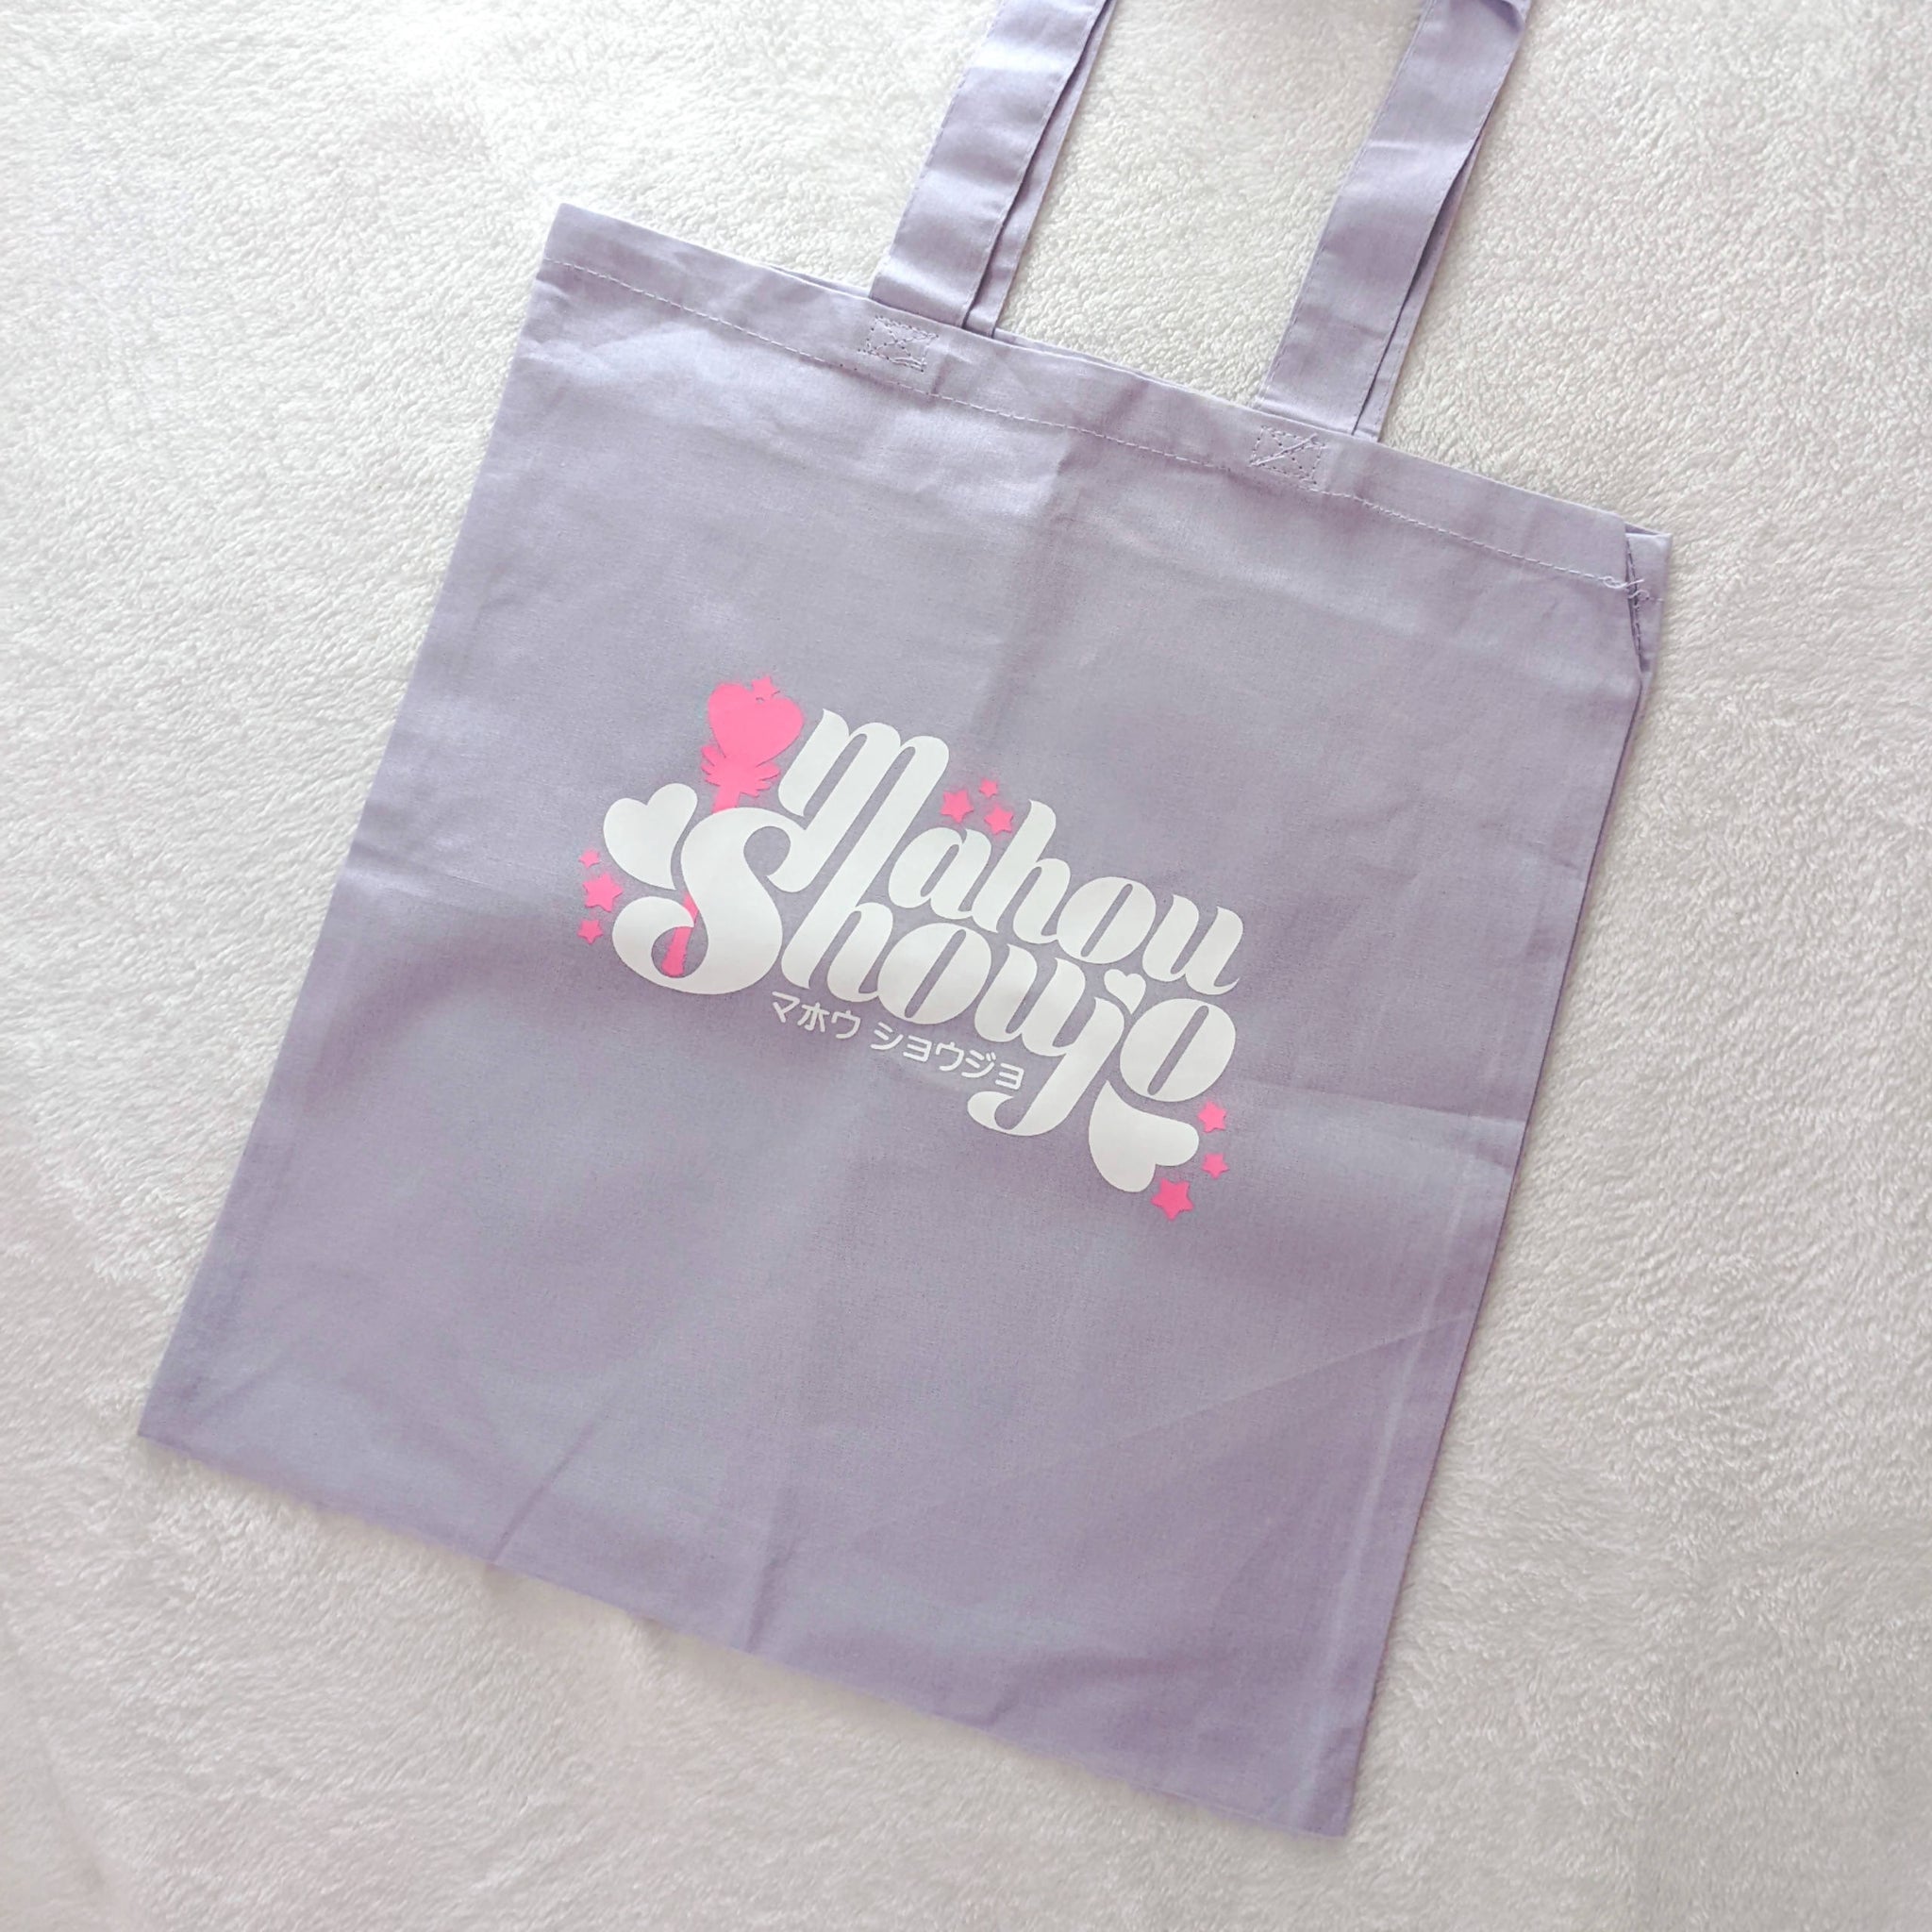 Mahou Shoujo Tote Bag